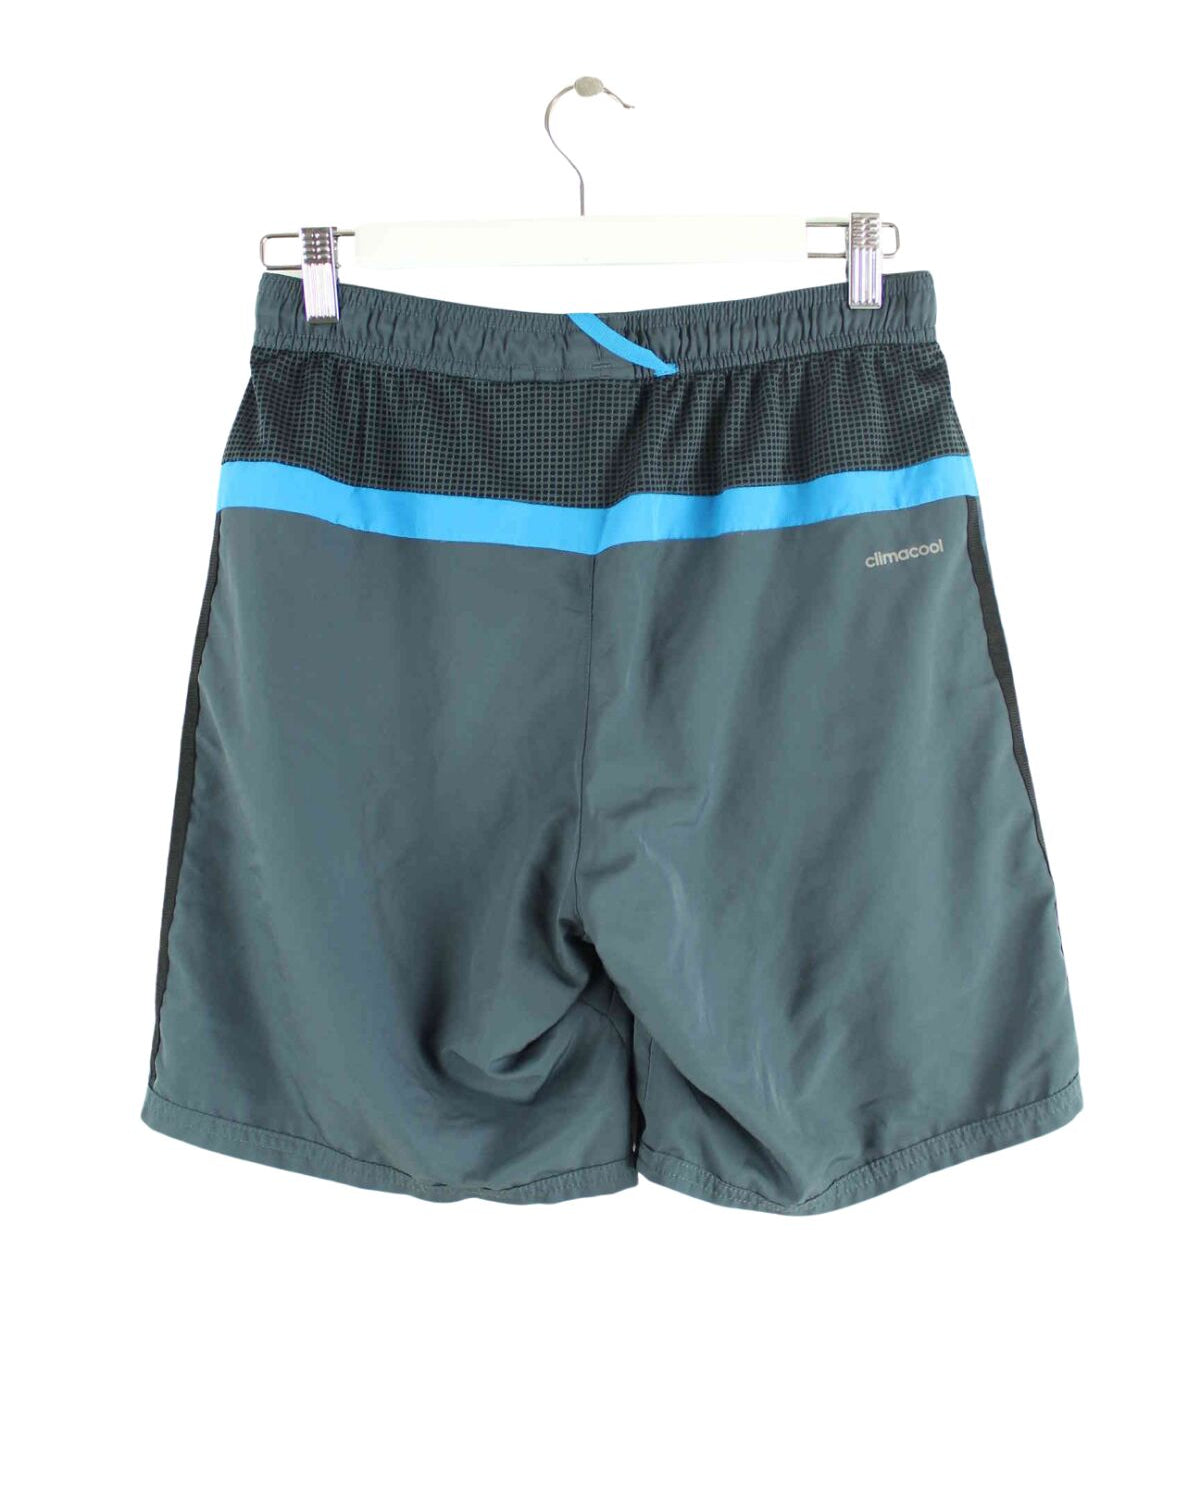 Adidas Shorts Grau S (back image)